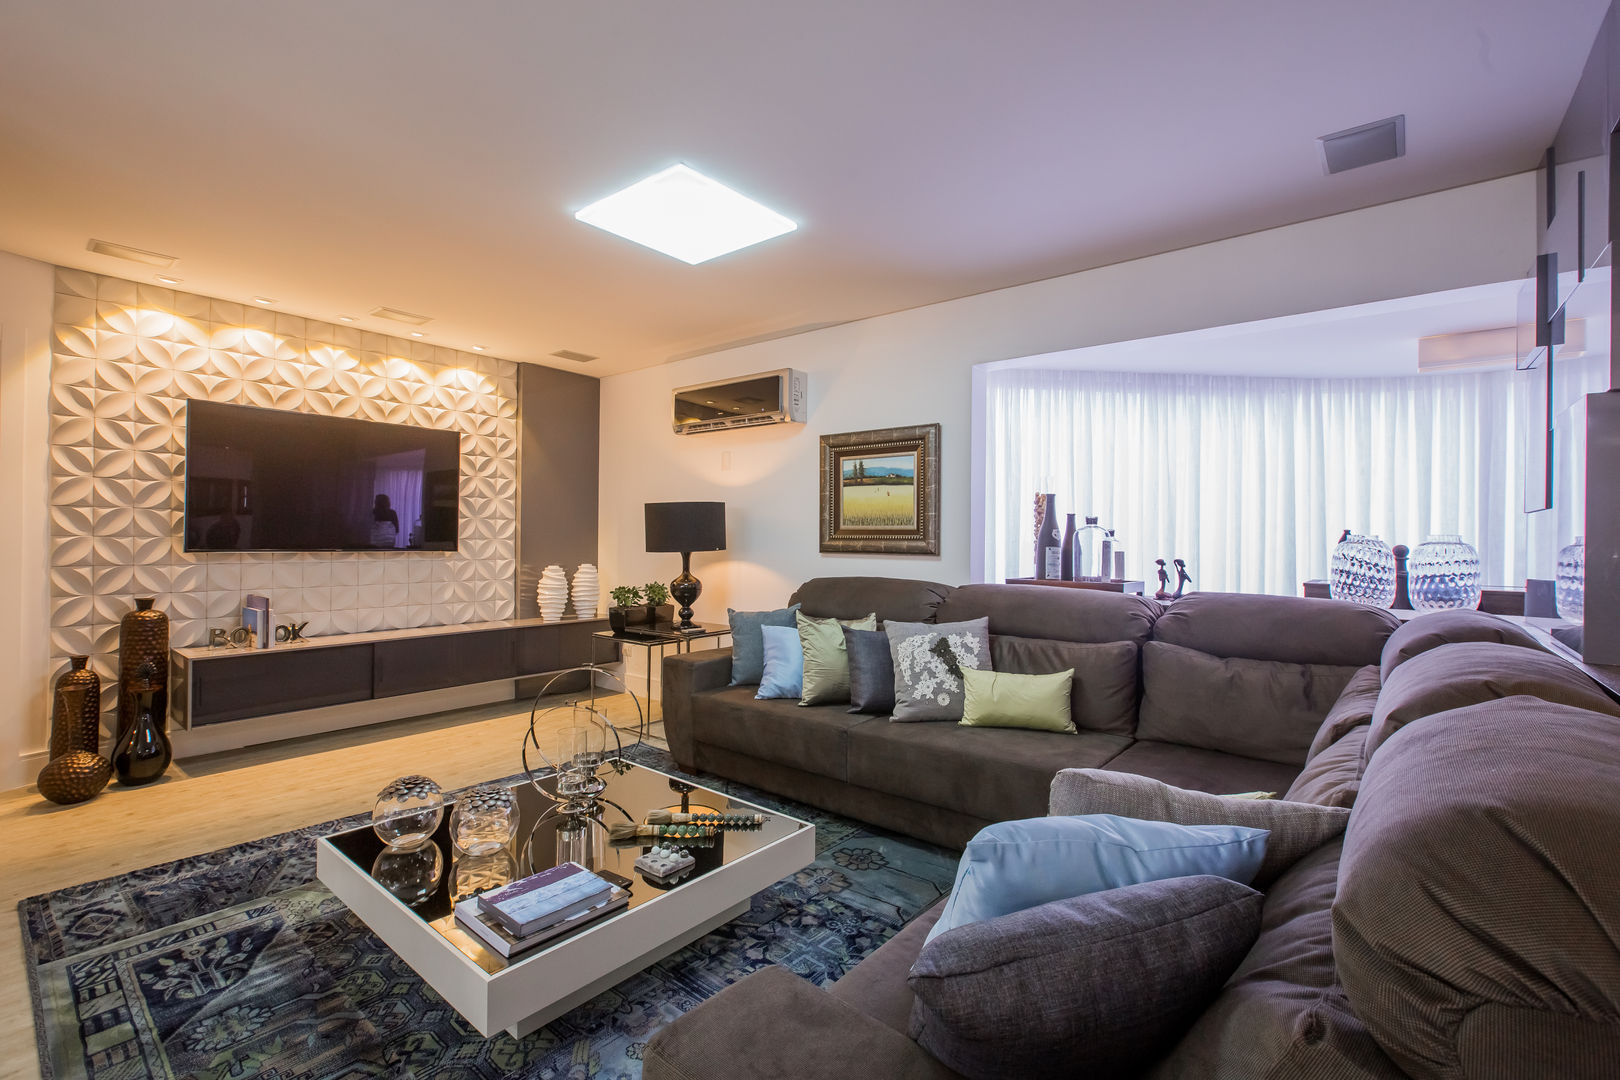 Apartamento em Cascavel, Evviva Bertolini Evviva Bertolini Salas de estar modernas